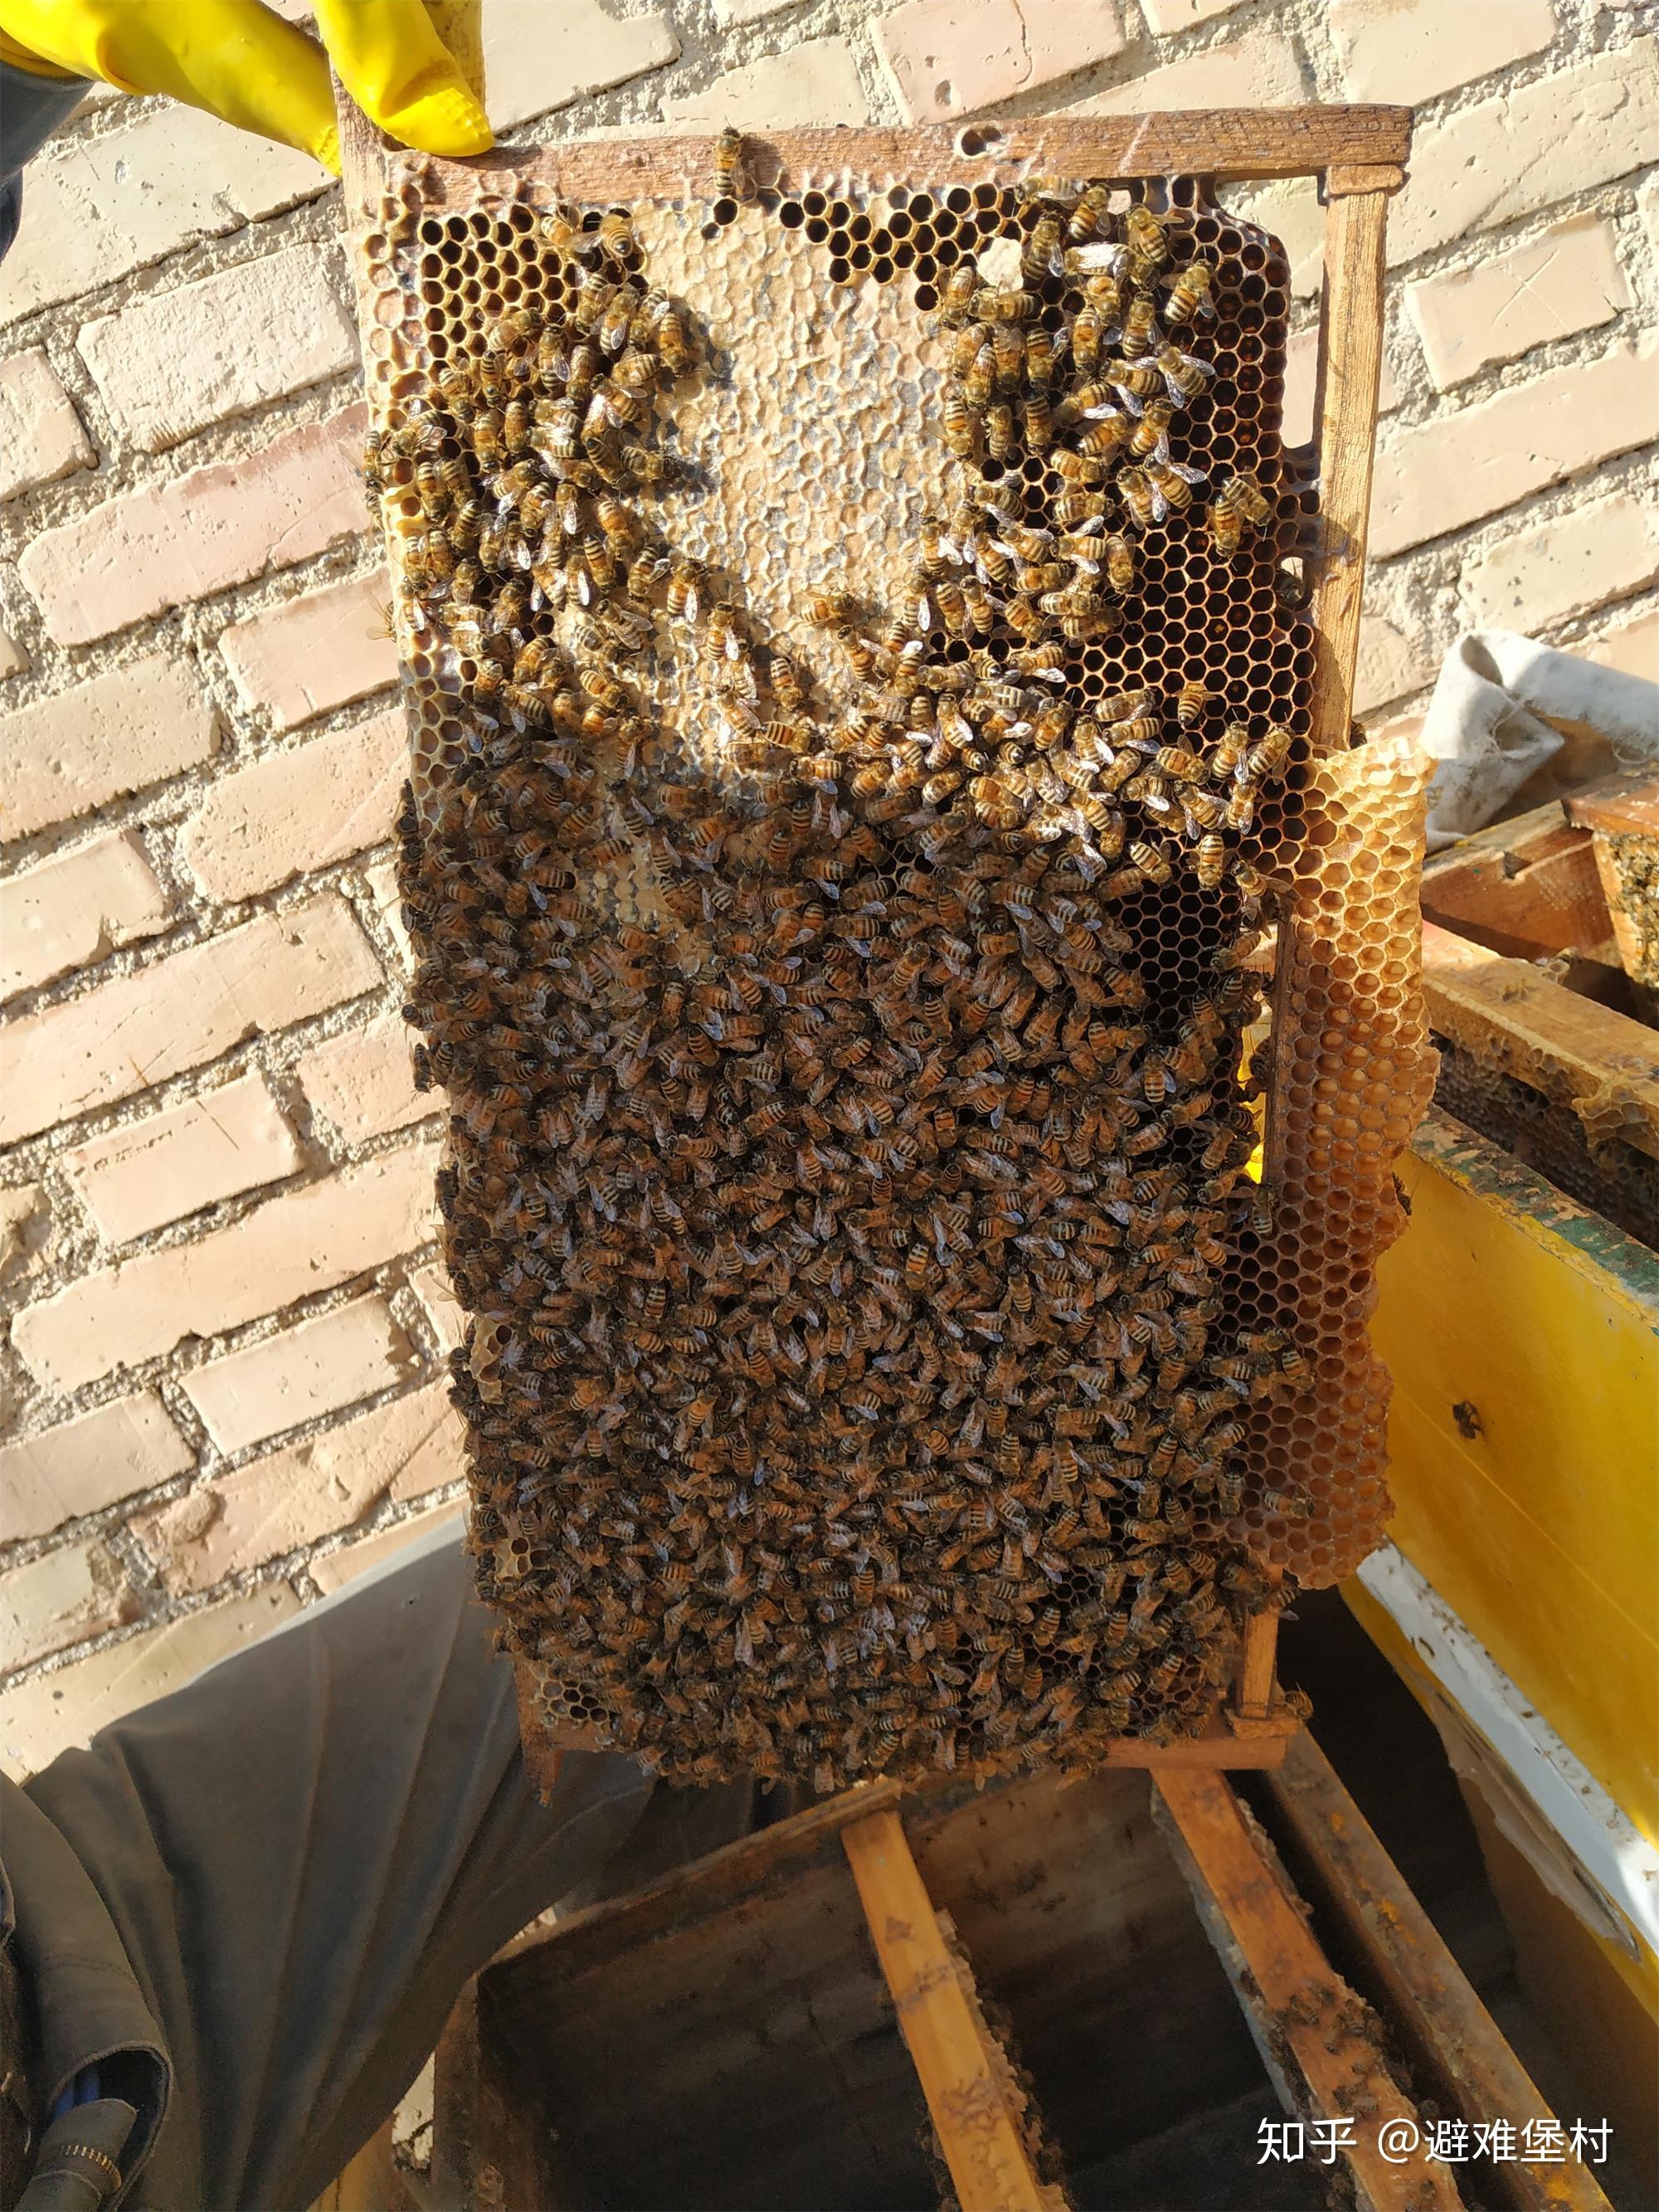 蜂蜜是蜜蜂屎？一滴蜂蜜背后的故事，告诉你蜂蜜是怎么形成的 - 知乎